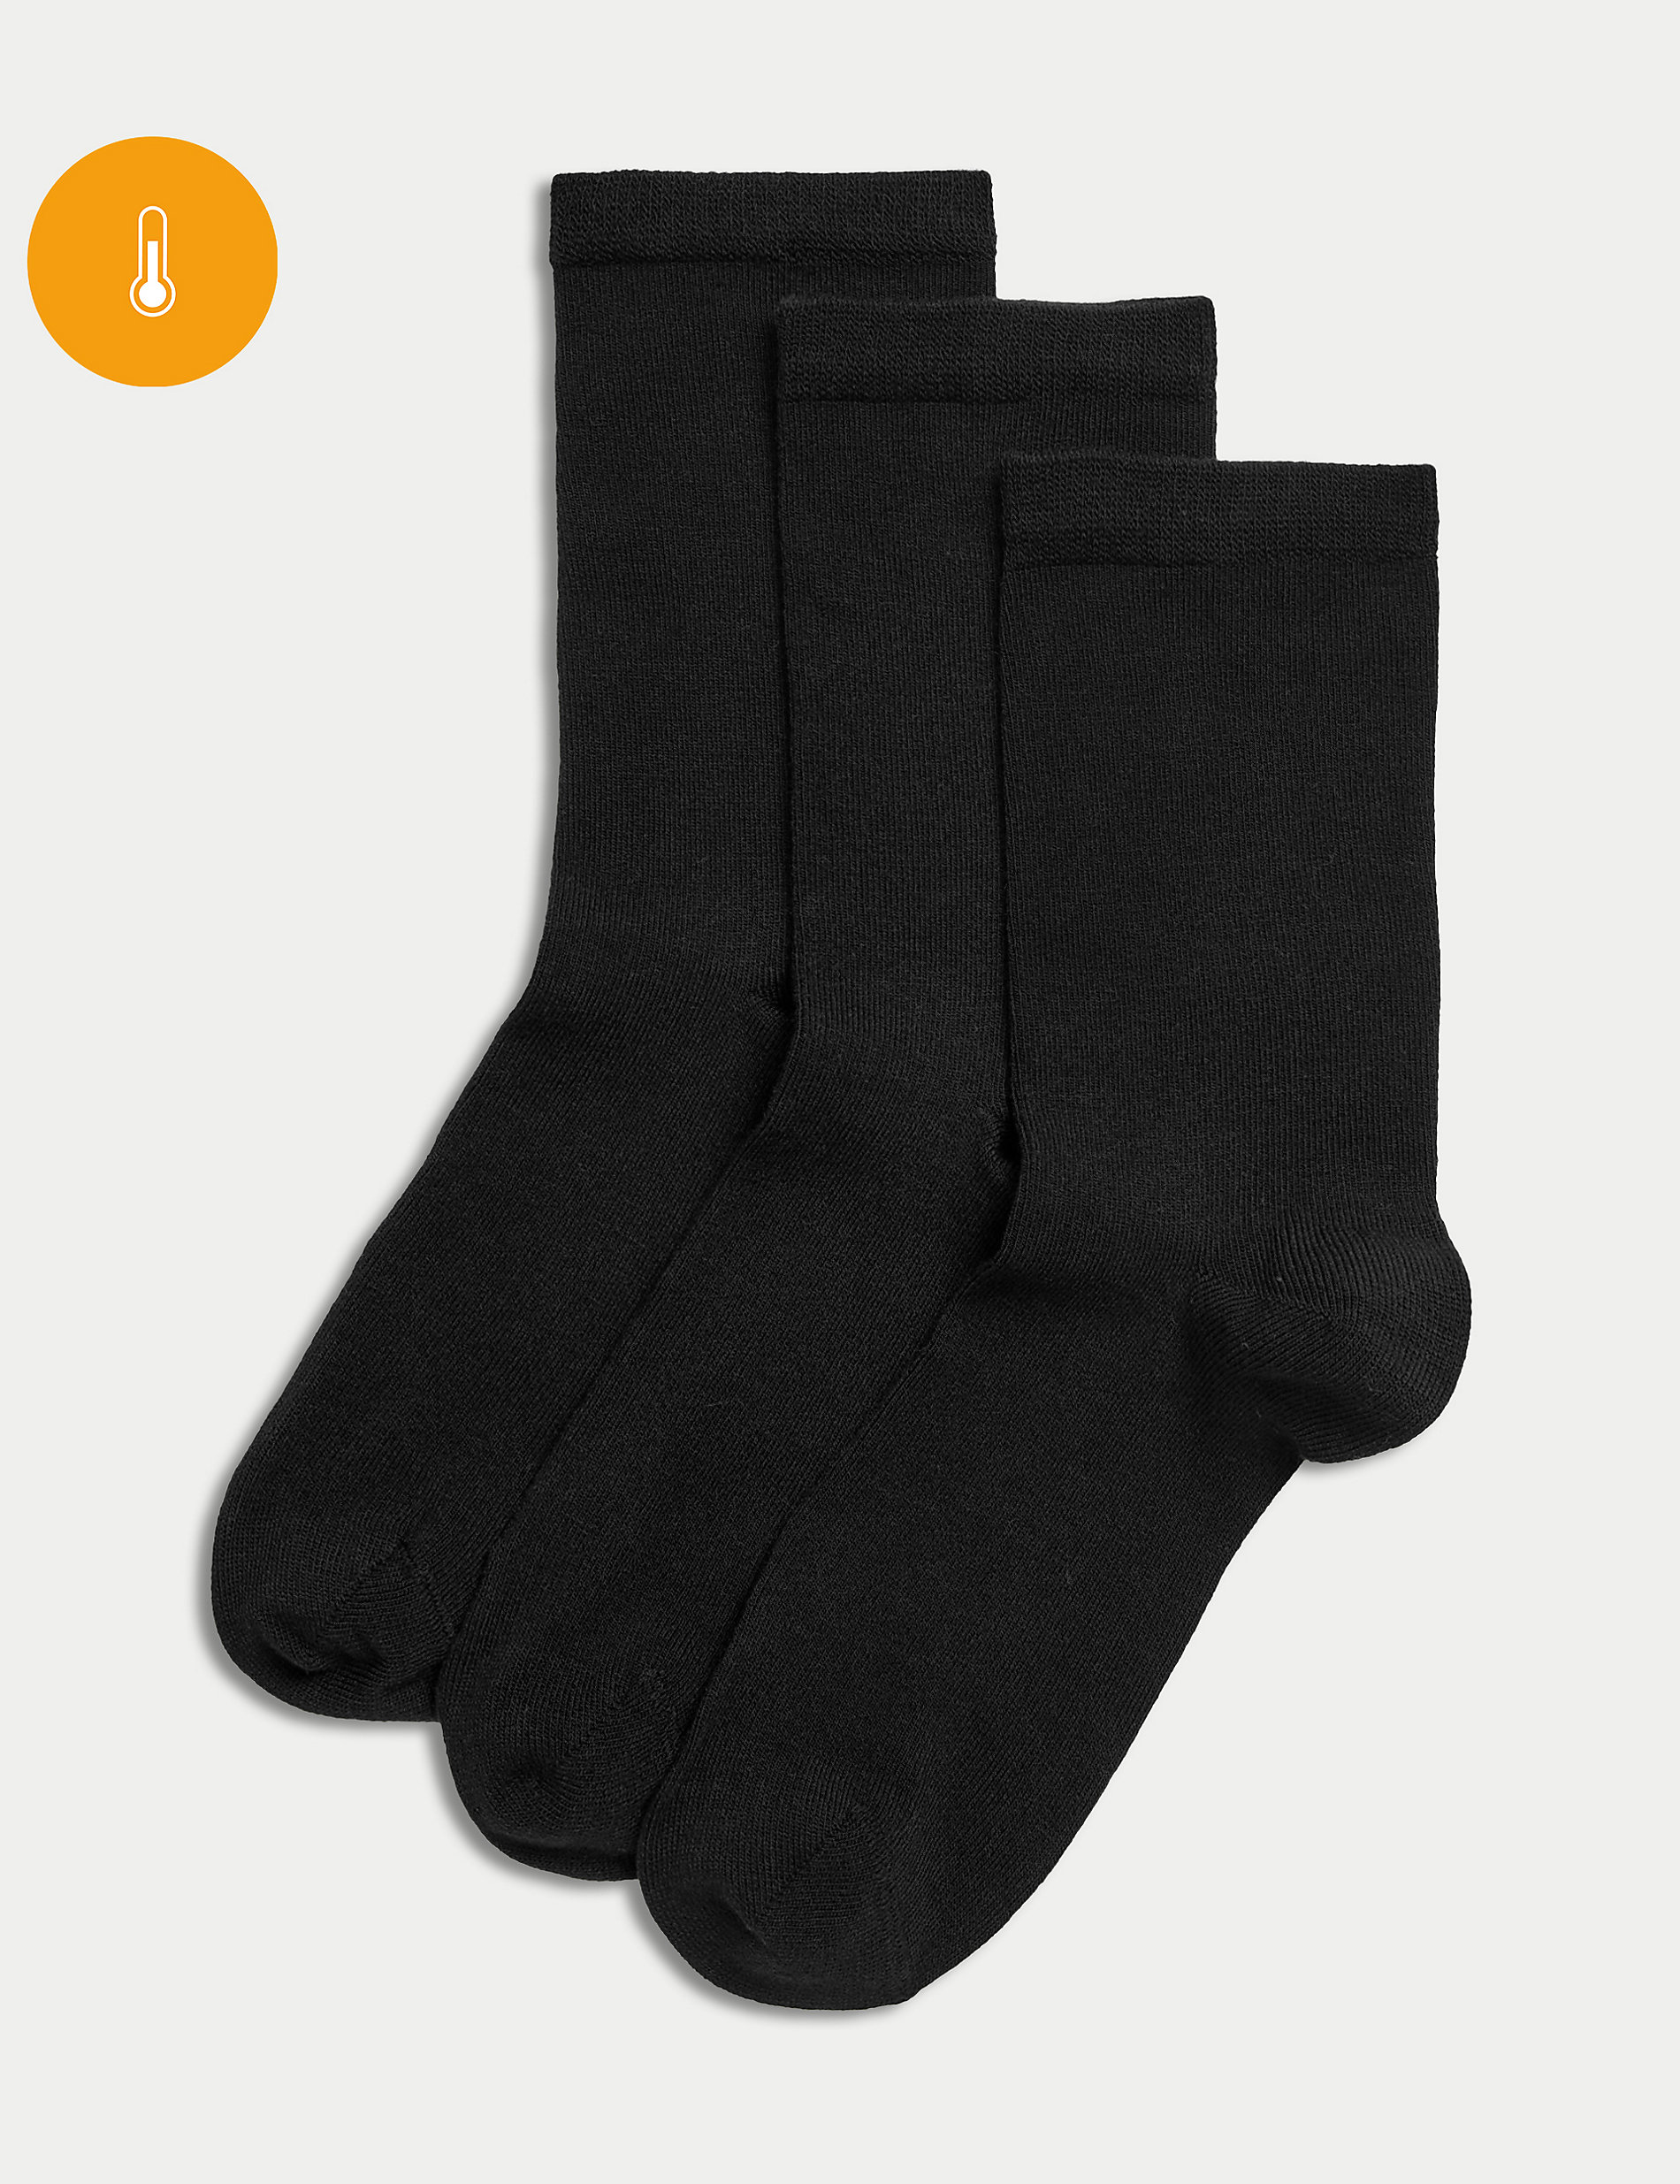 Ισοθερμικές κάλτσες μέχρι τον αστράγαλο χωρίς ραφές σε σετ των 3